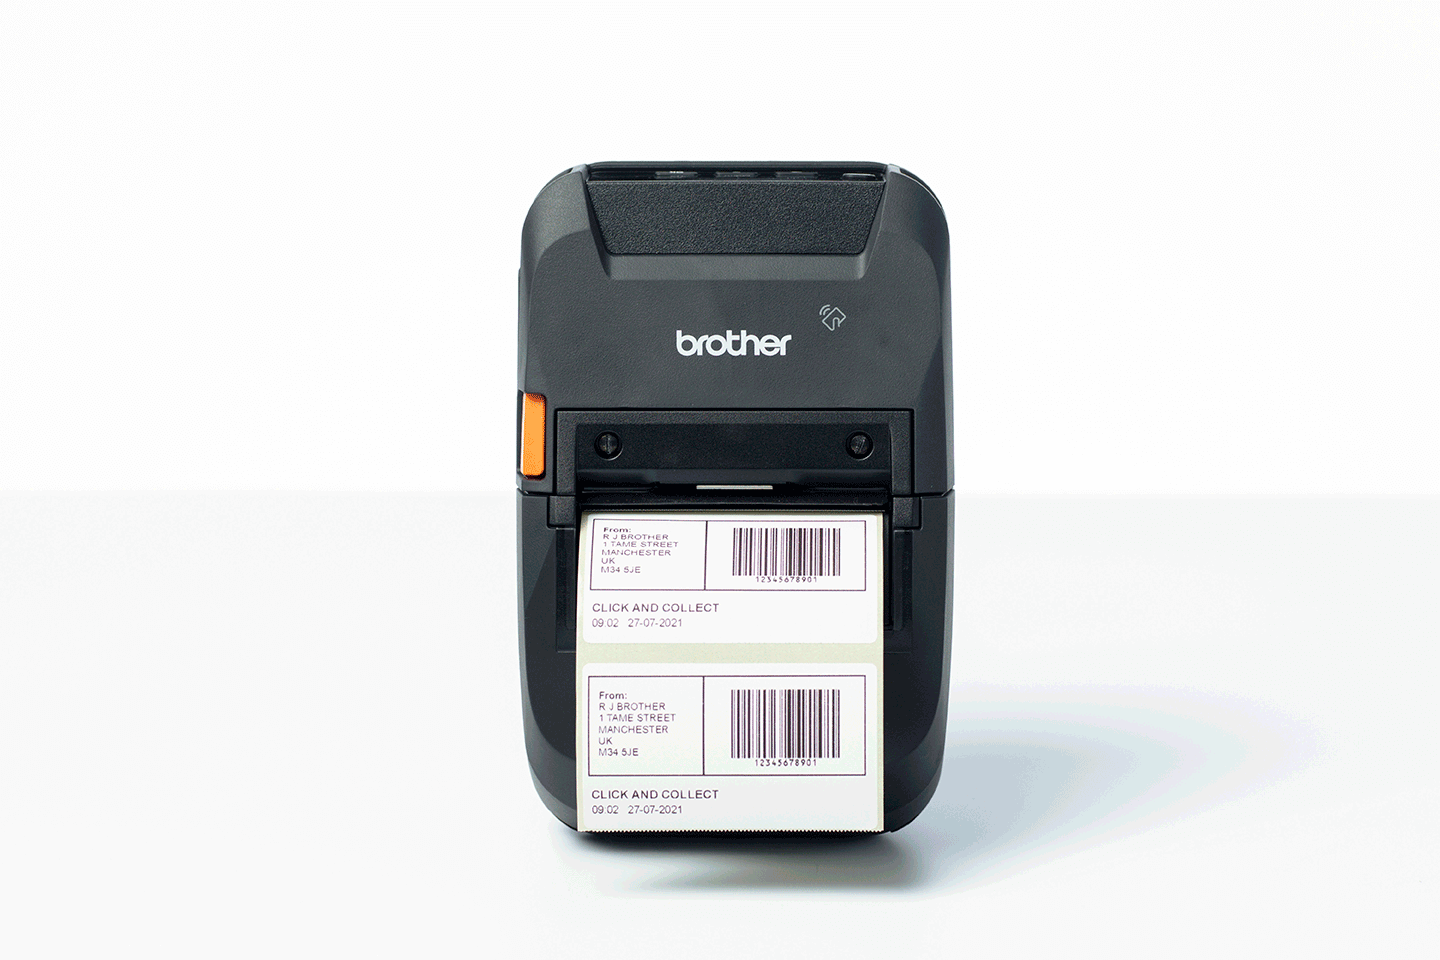 Brother RJ-3230BL izdržljiv mobilni štampač nalepnica 5